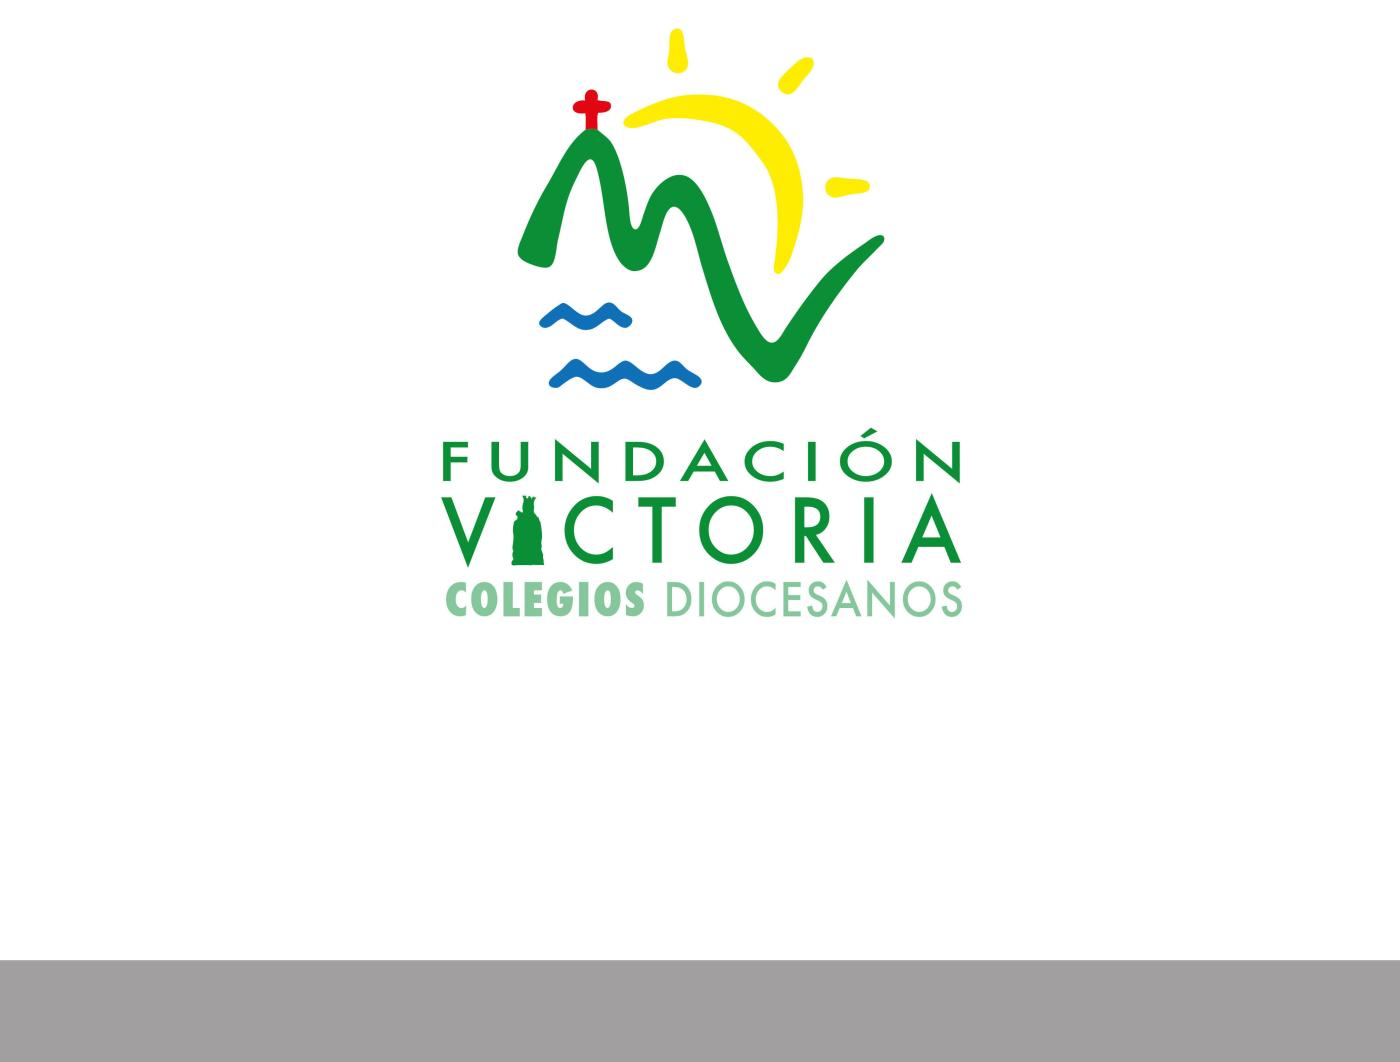 Fundación Victoria